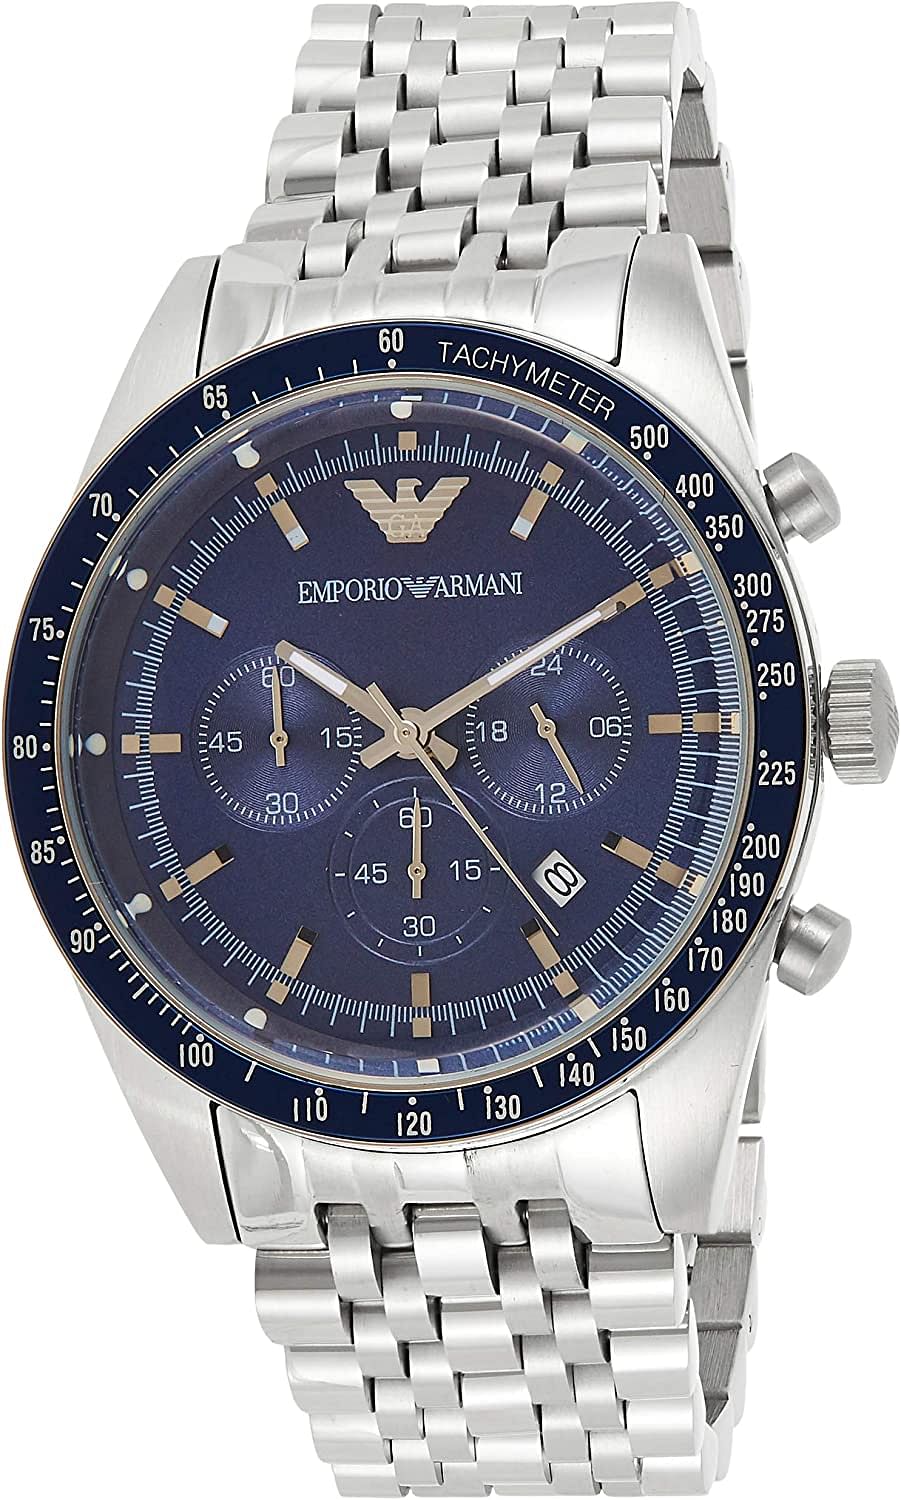 Emporio Armani Men's Watch, Analog Display, AR6072 - Silver